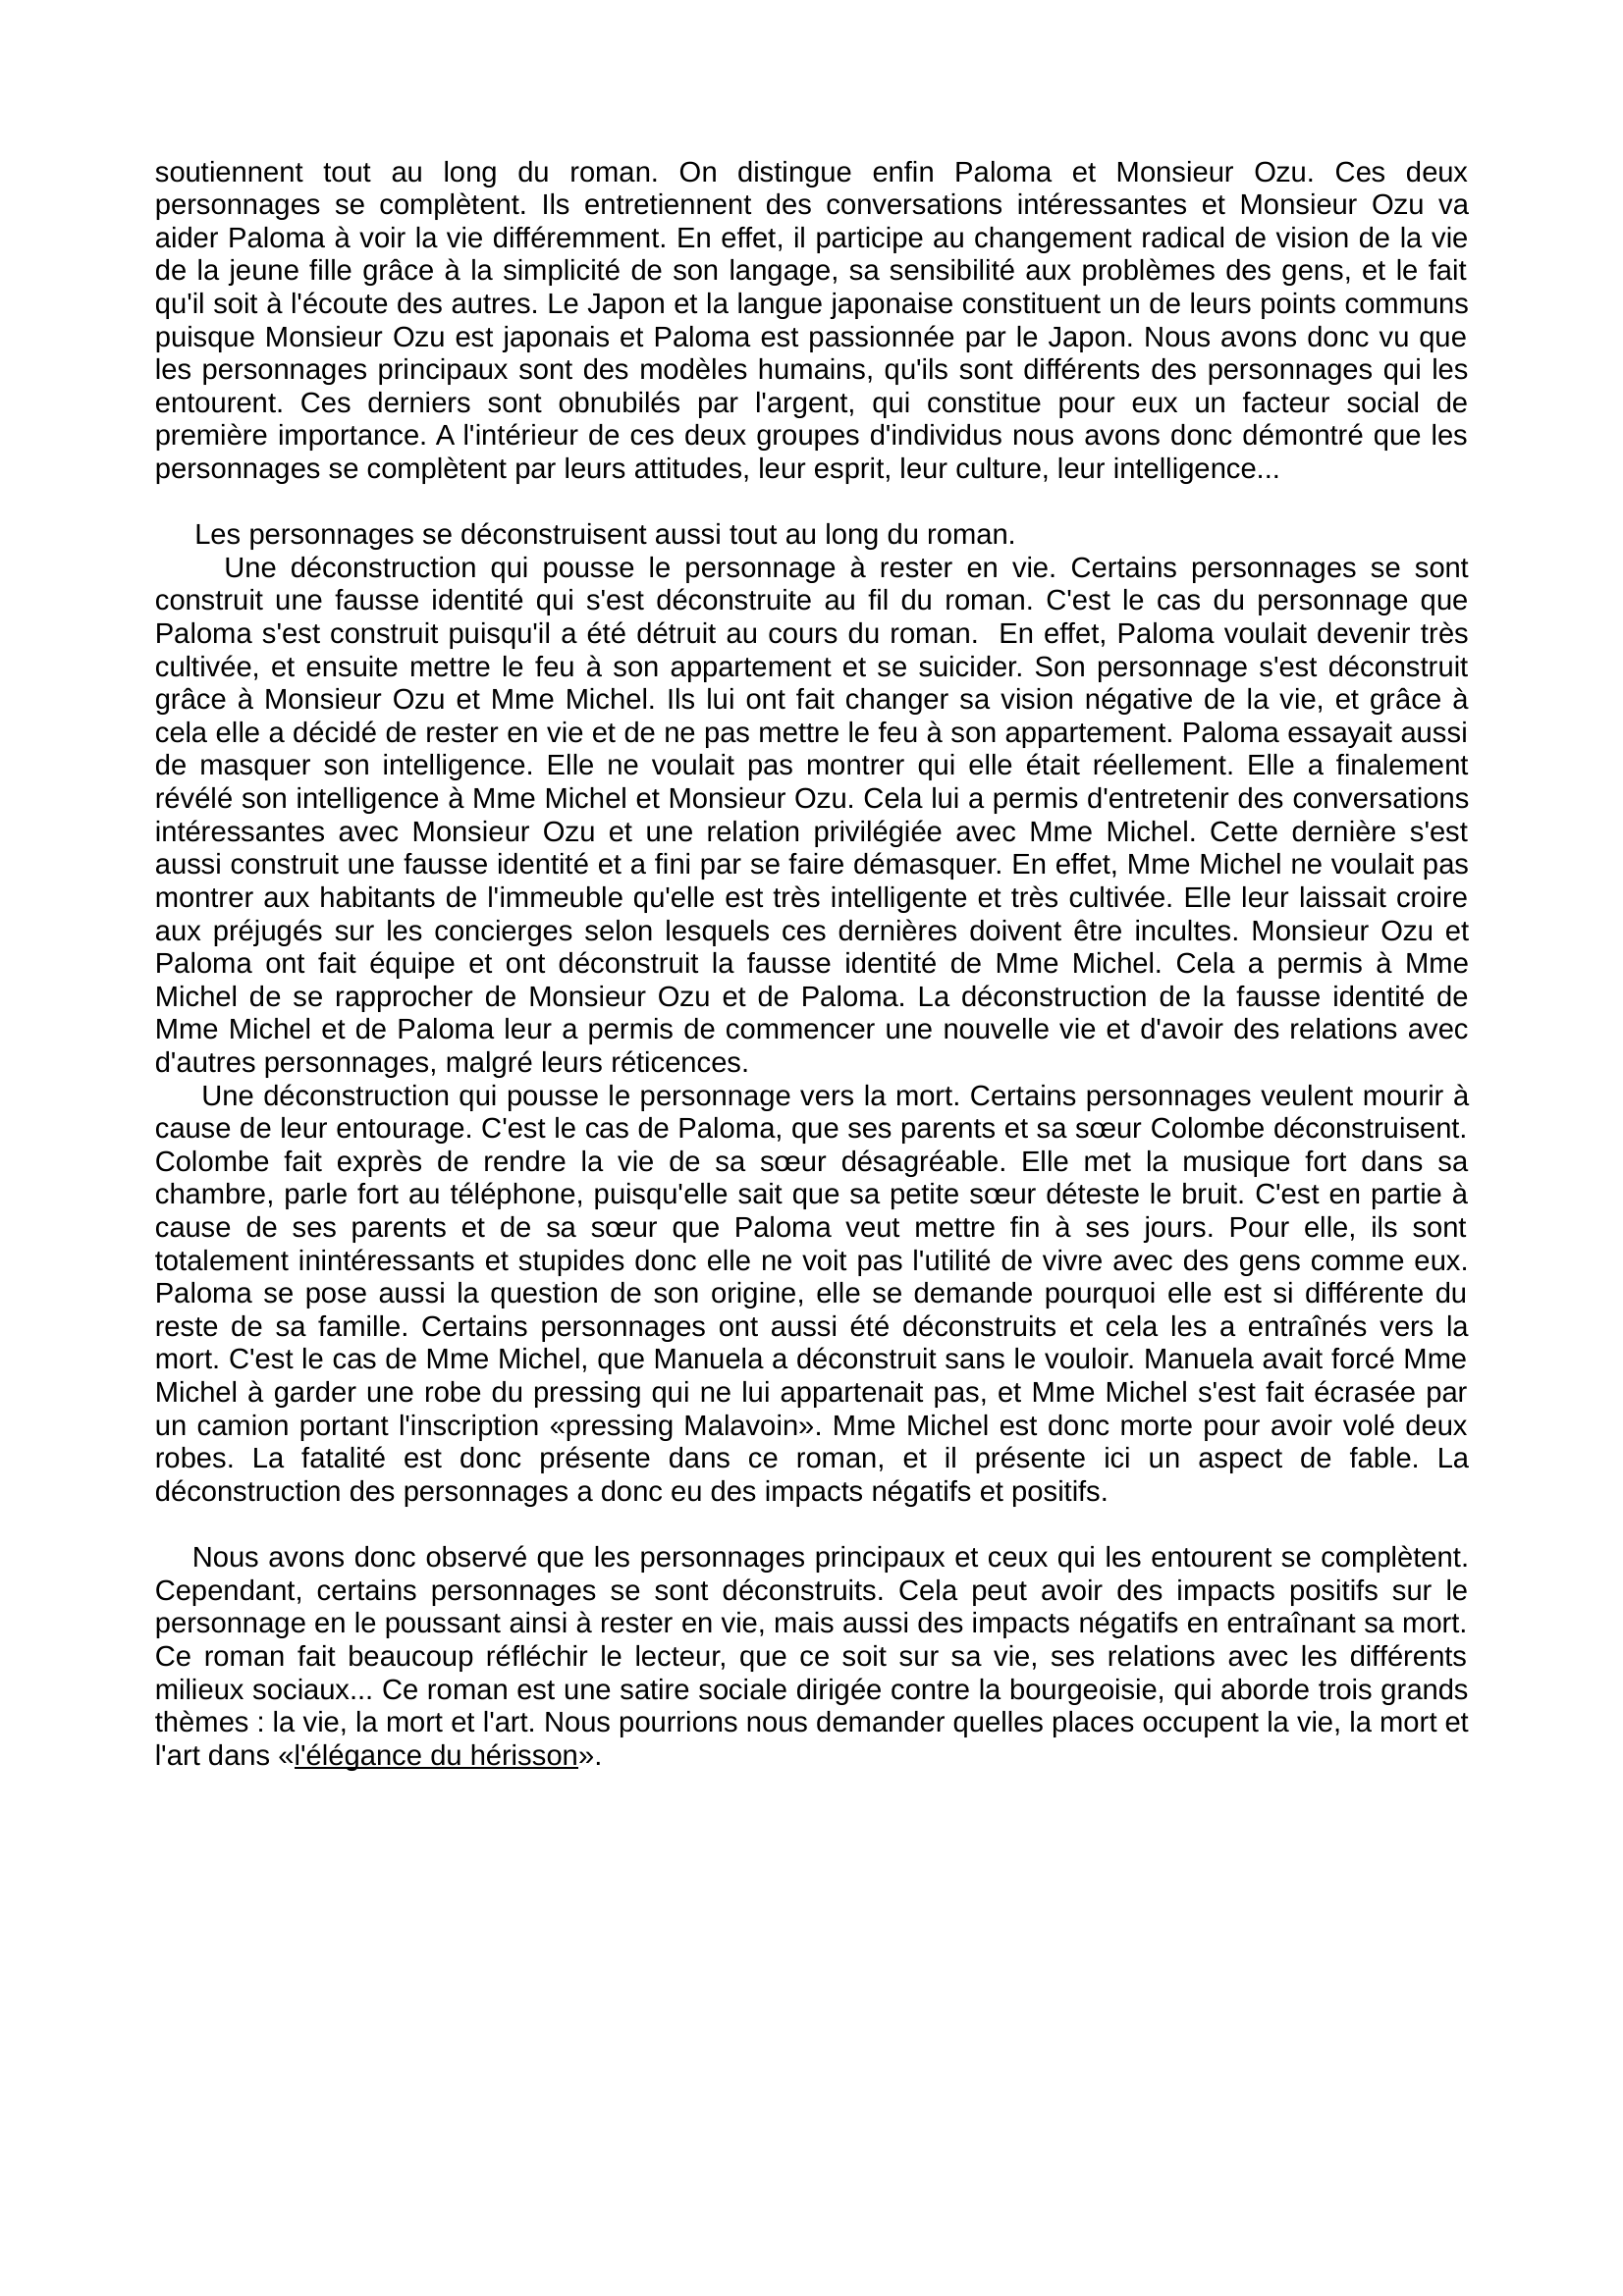 Prévisualisation du document Dissertation : l'élégance du hérisson, de Muriel Barbery